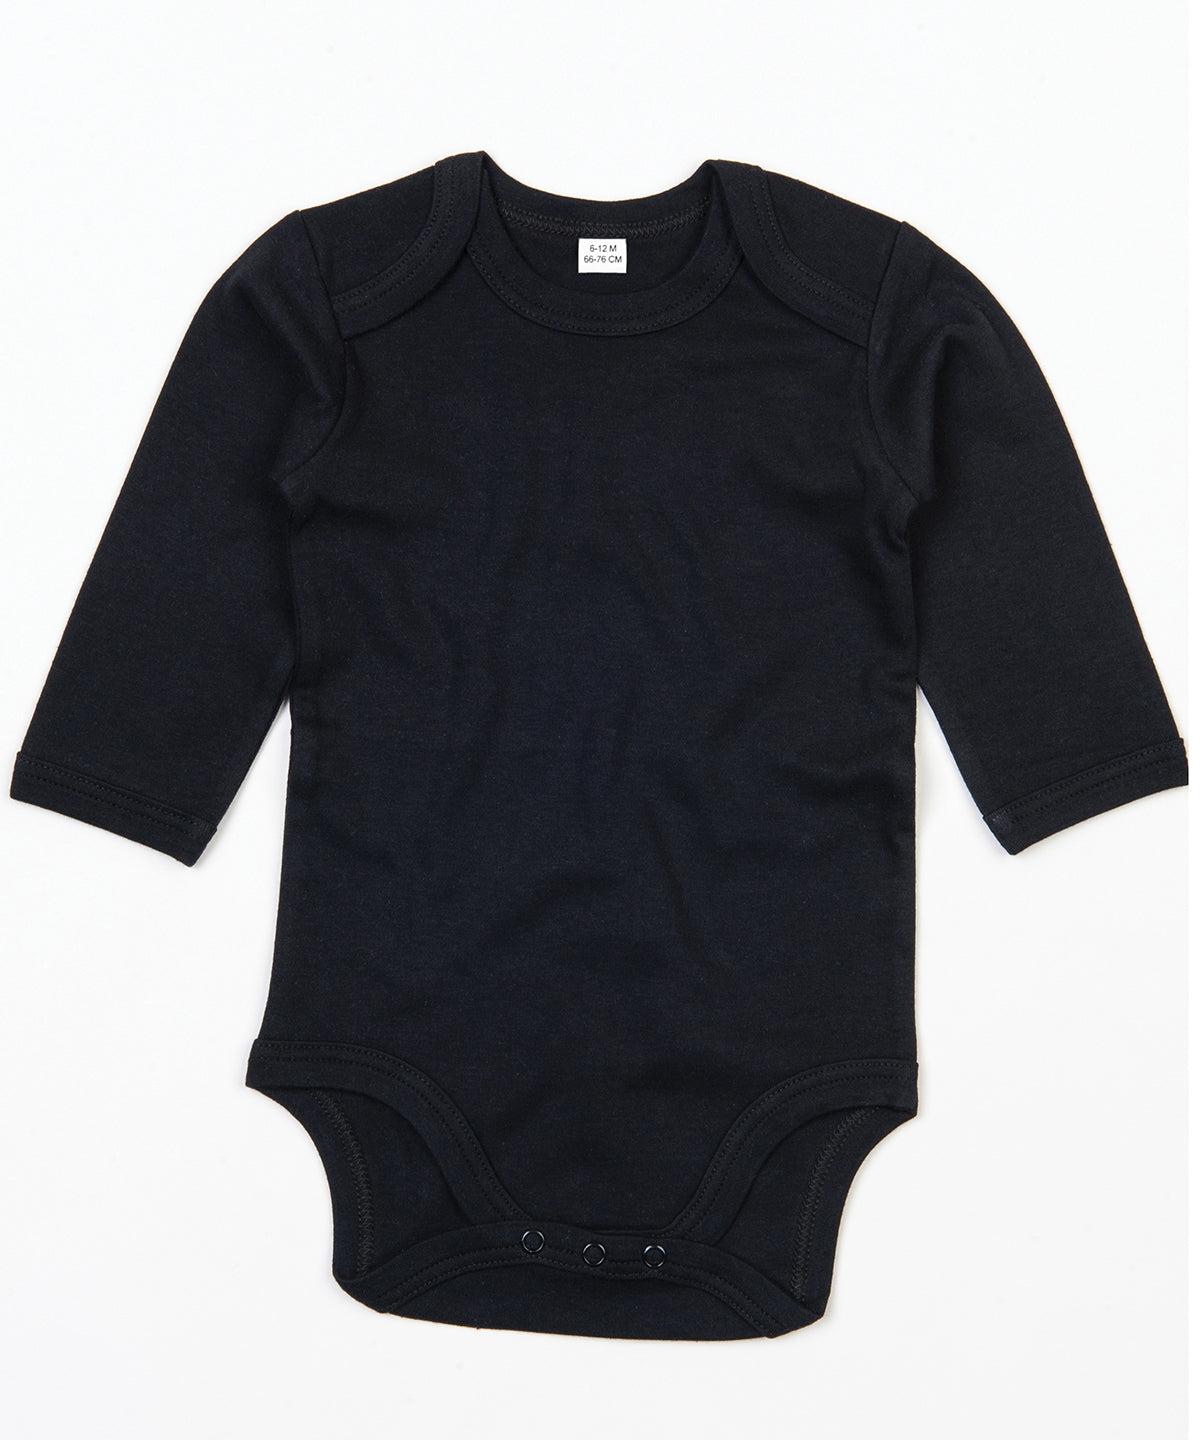 Personalised Bodysuits - Black Babybugz Baby organic long sleeve bodysuit